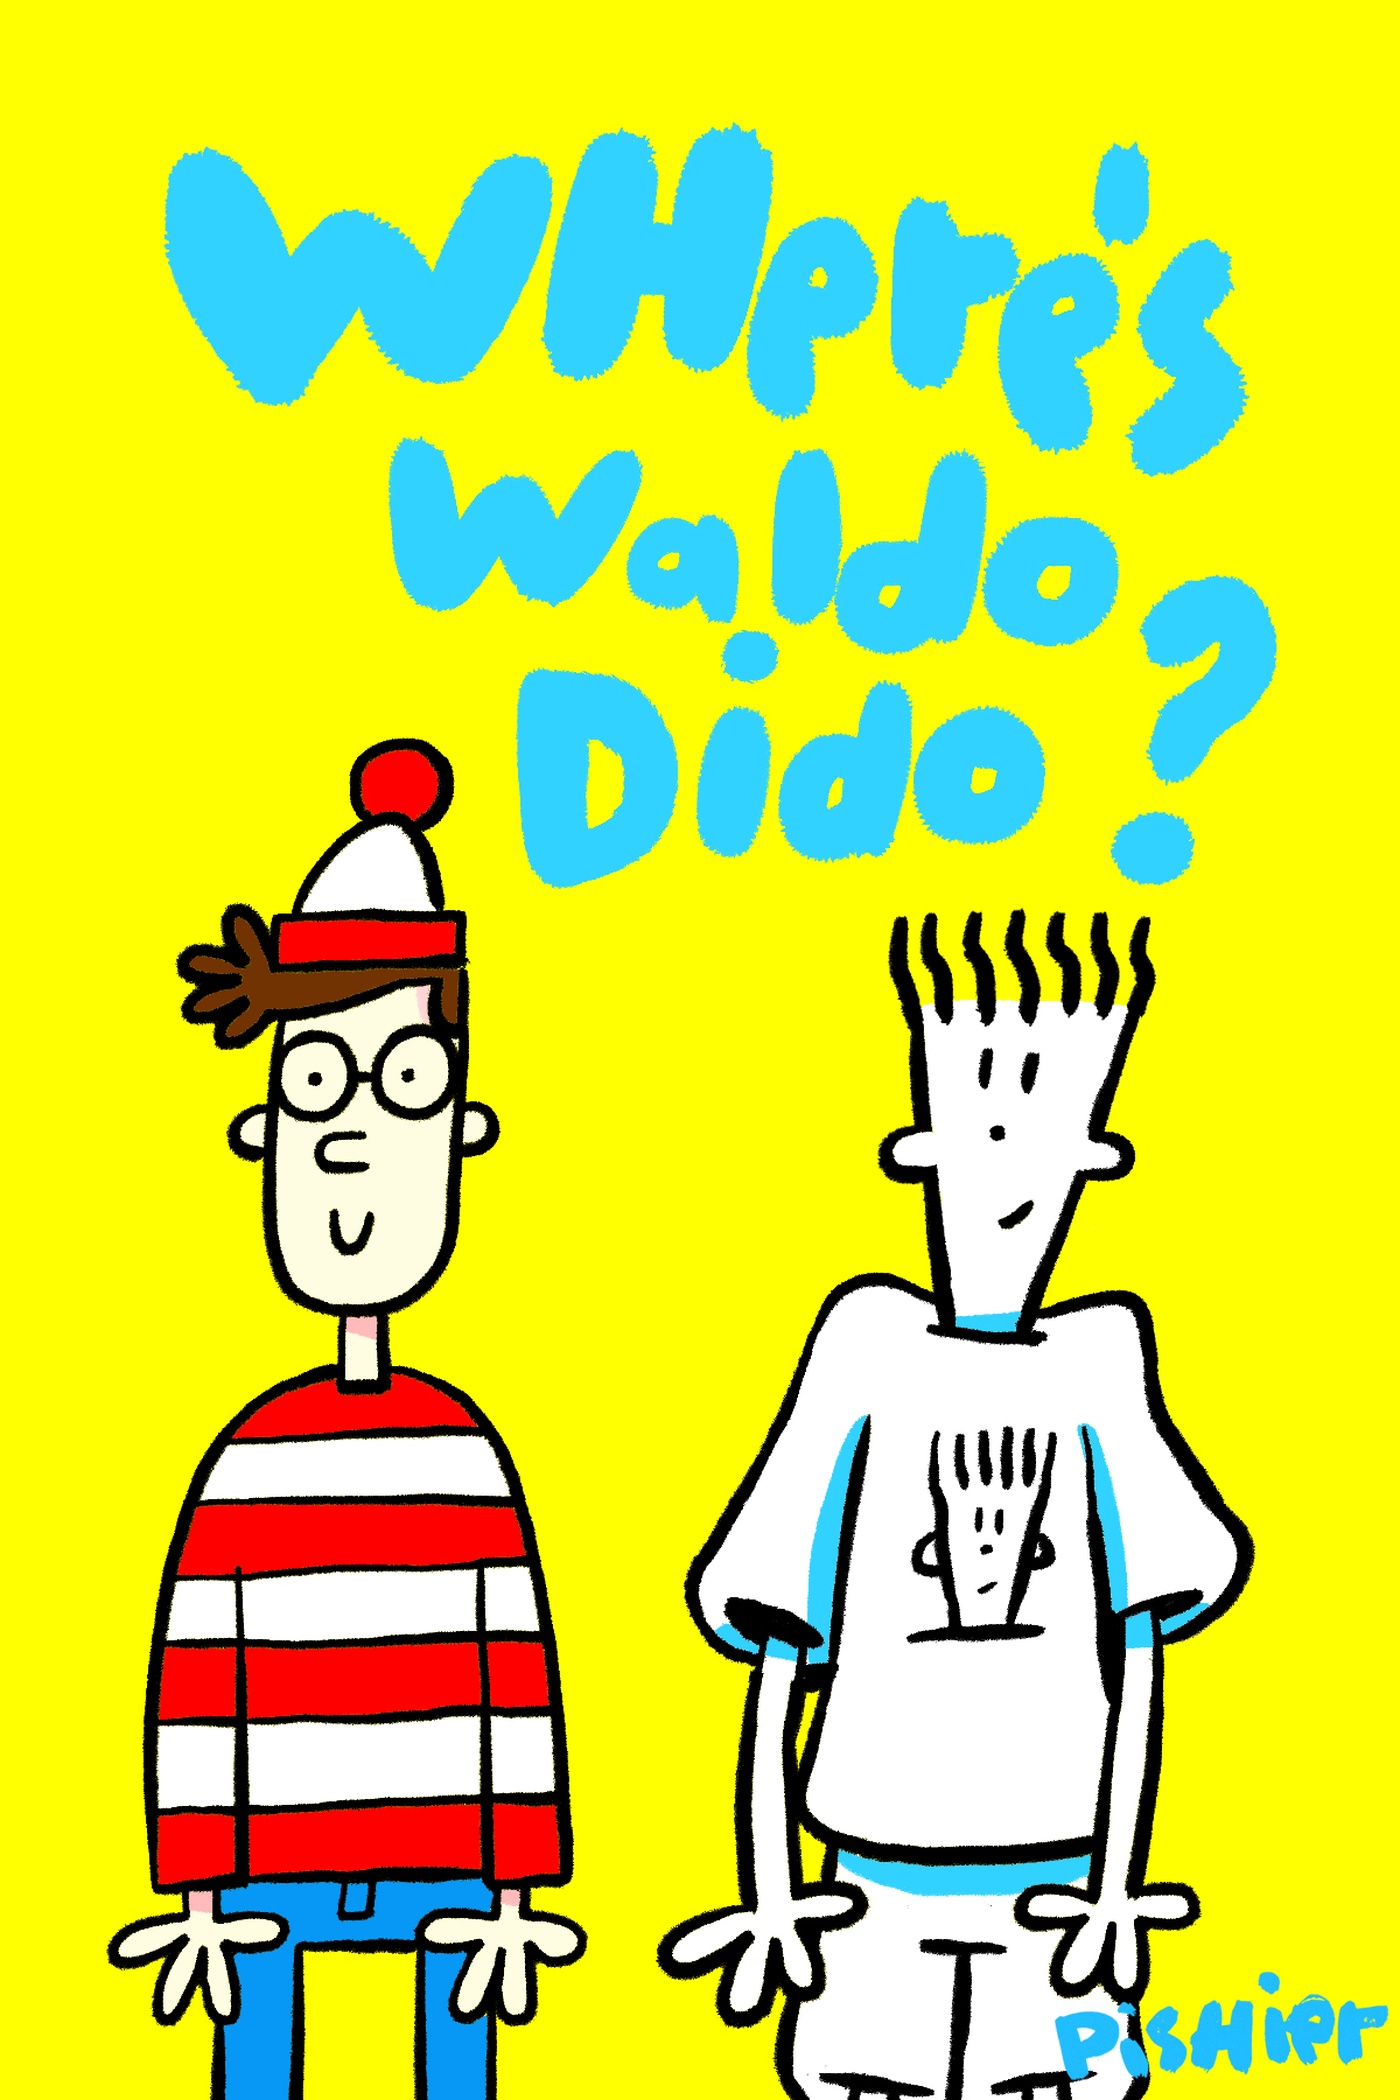 PisHier - Waldo Dido